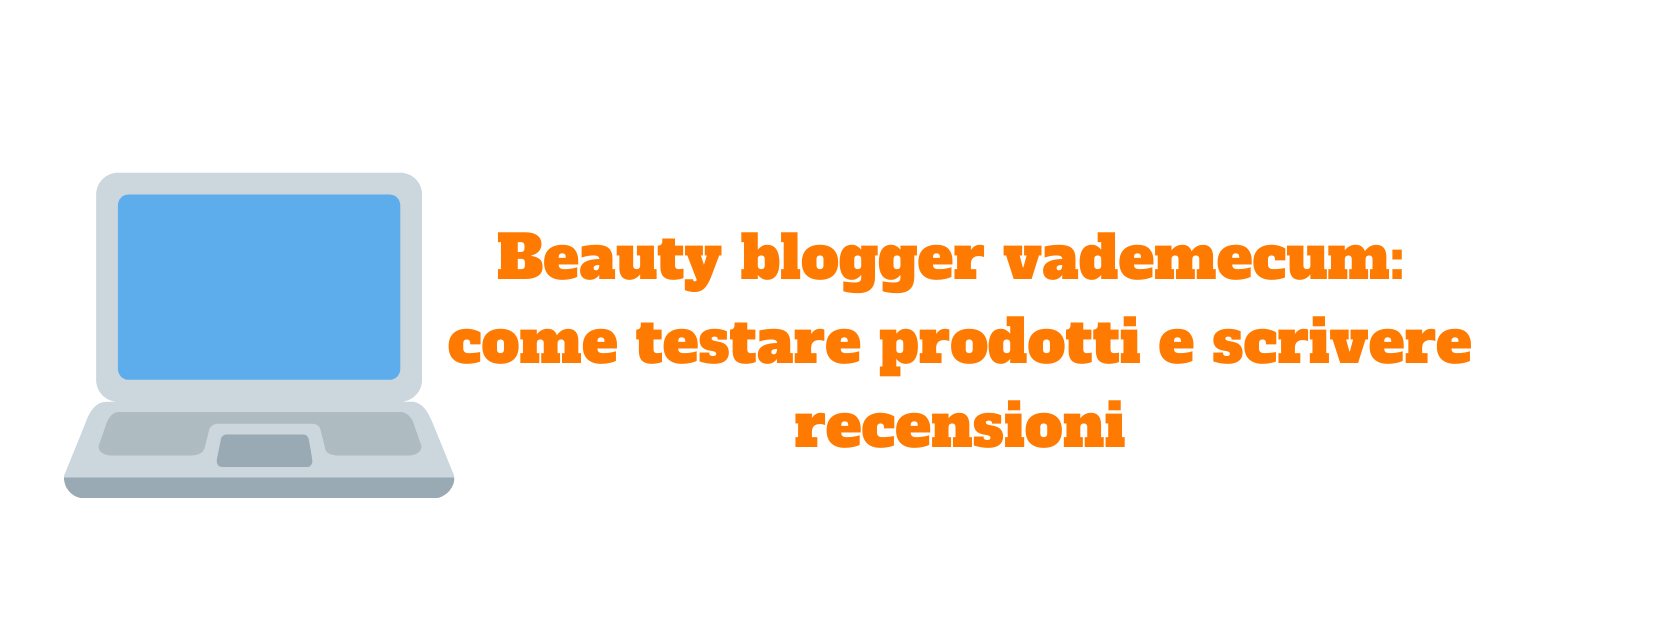 Beauty blogger vademecum: come testare prodotti e scrivere recensioni